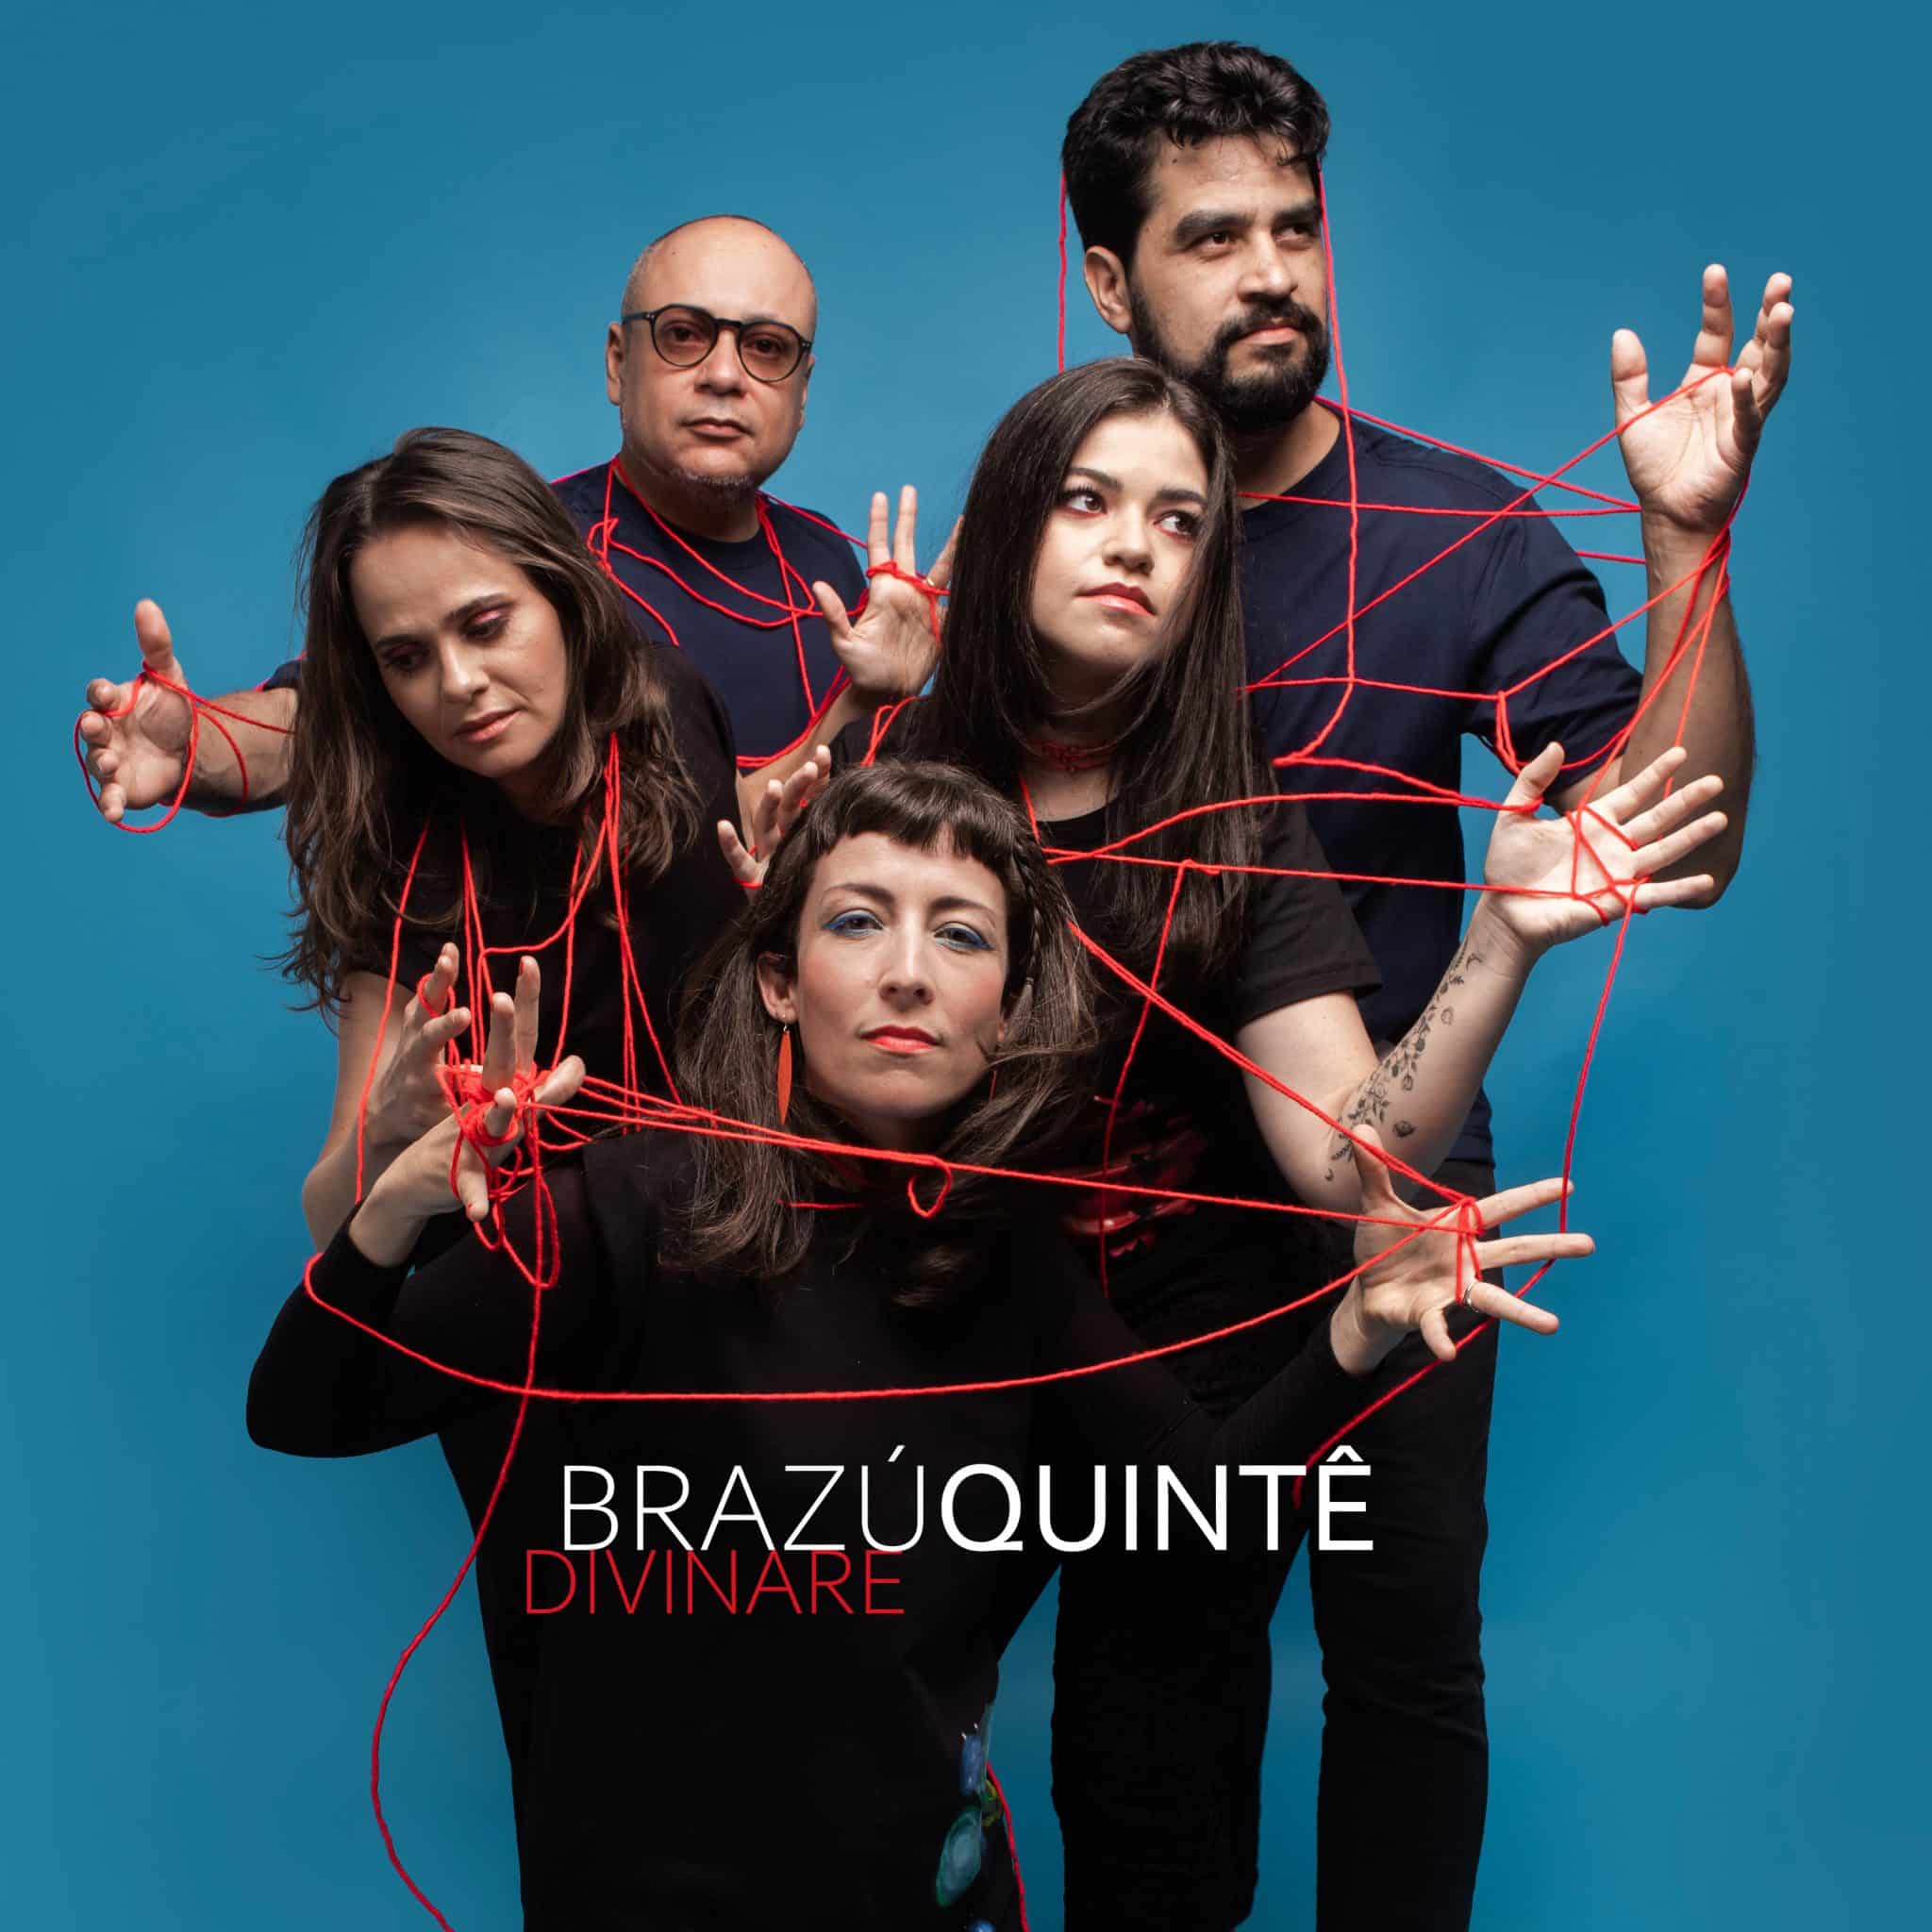 revistaprosaversoearte.com - Brazú Quintê lança 'Divinare', segundo álbum do grupo